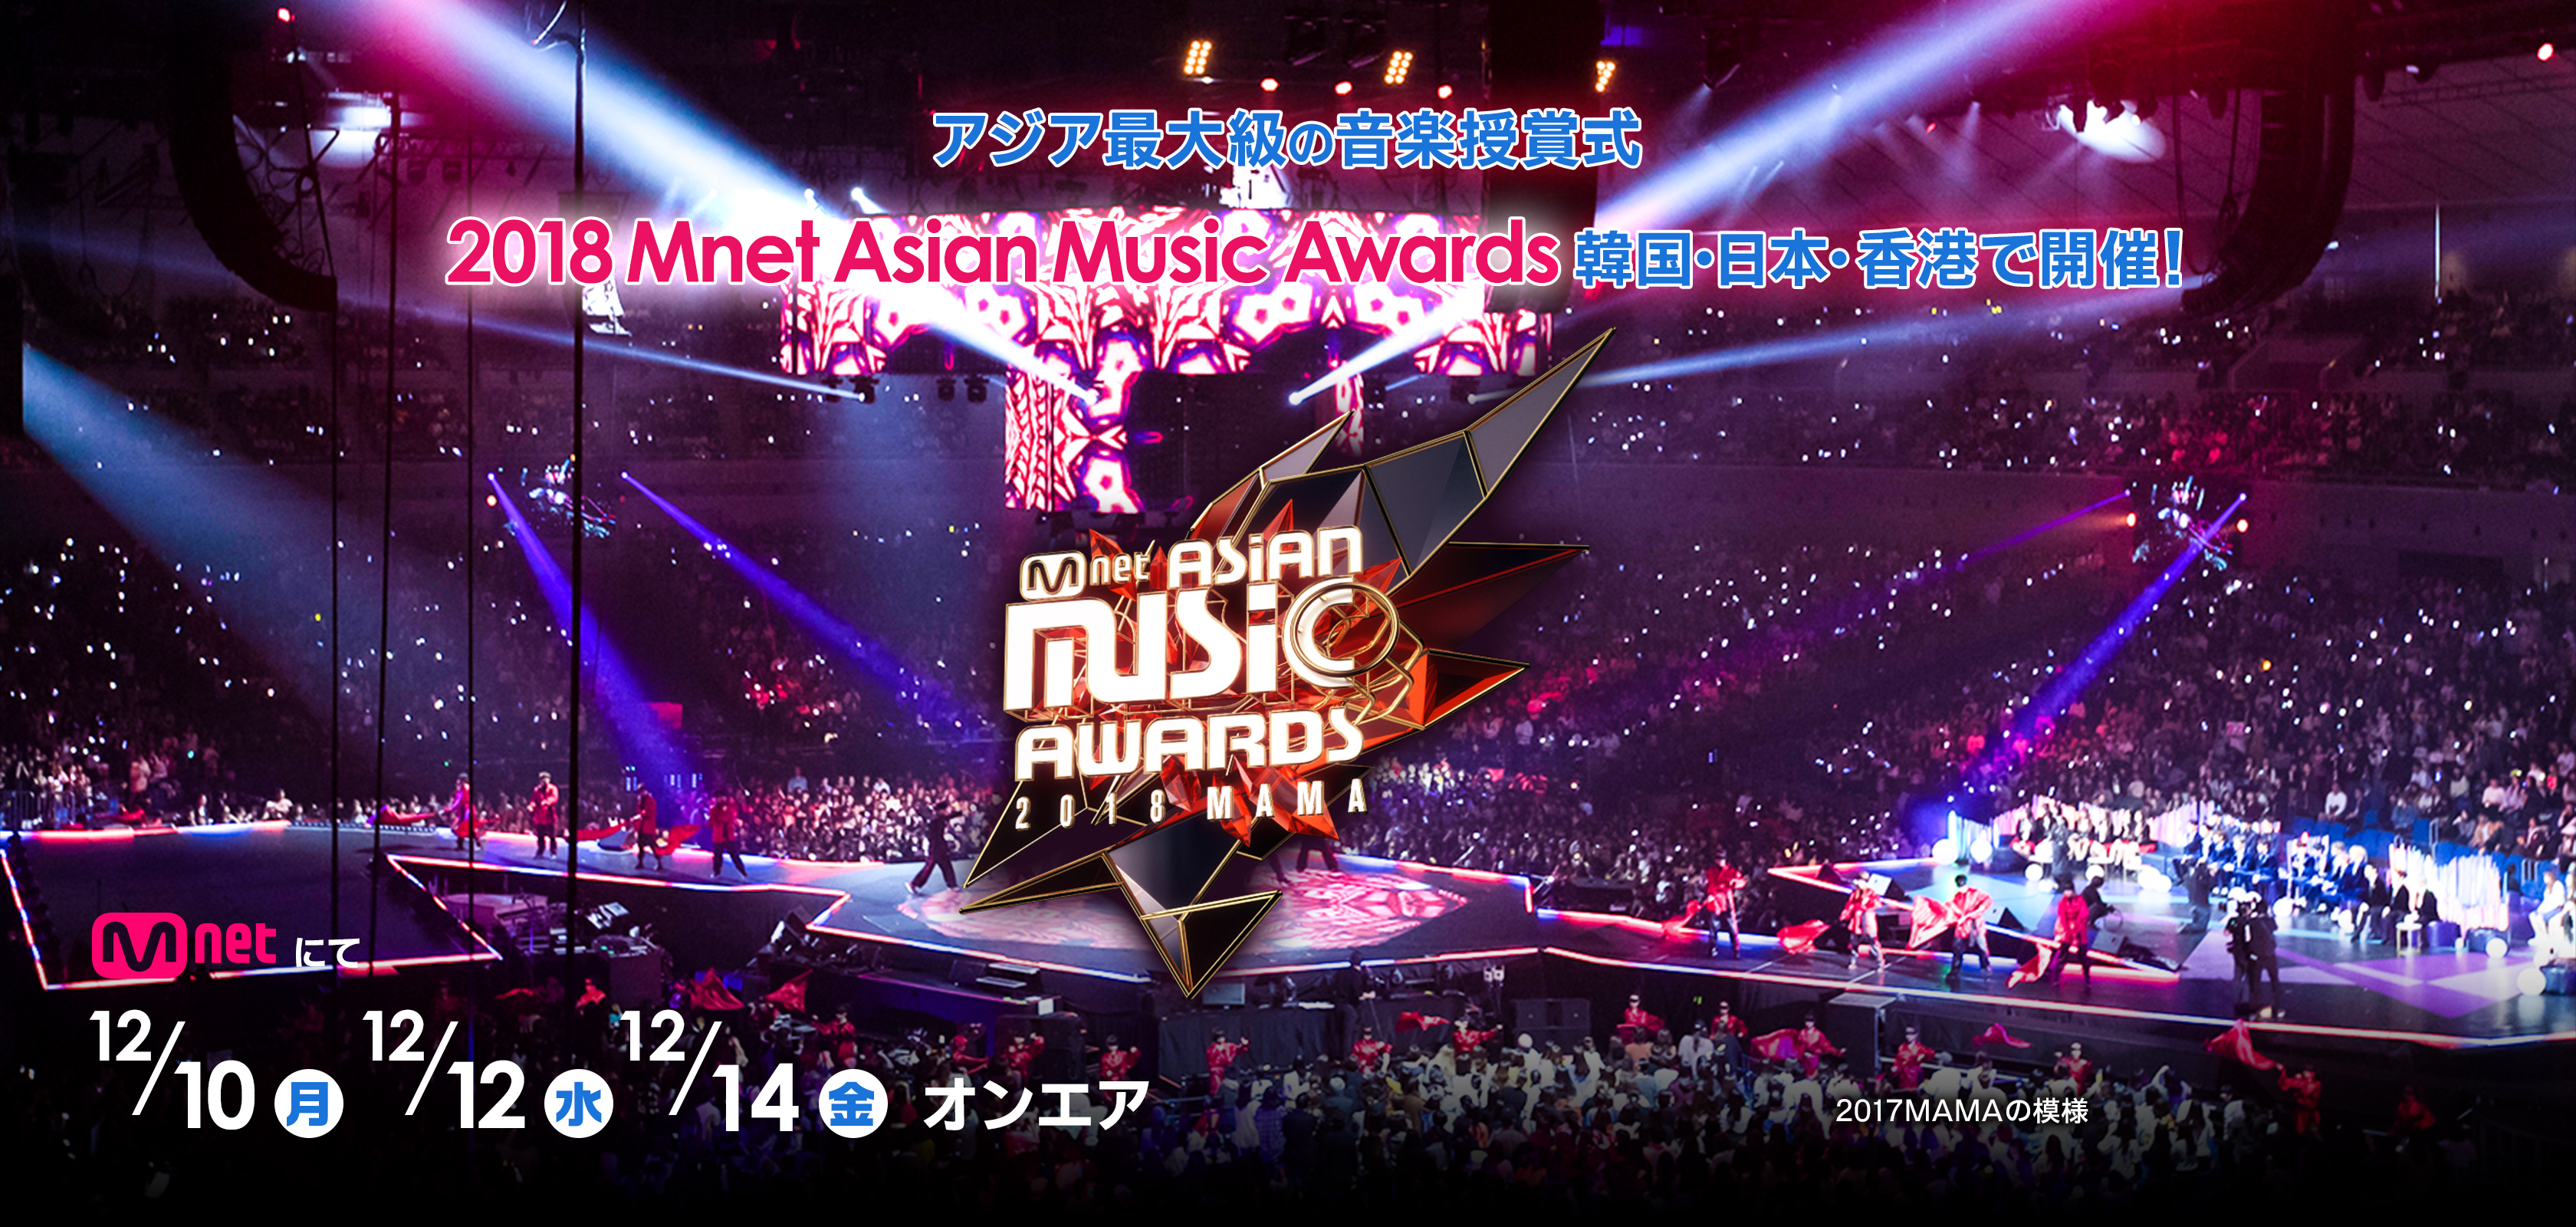 アジア最大級の音楽授賞式 2018 Mnet Asian Music Awards 韓国・日本・香港で開催！ Mnetにて12/10(月) 12/12(水) 12/14(金) オンエア 2017MAMAの模様 ©CJ ENM Co., Ltd, All Rights Reserved  ©CJ E&M Corporation, all rights reserved